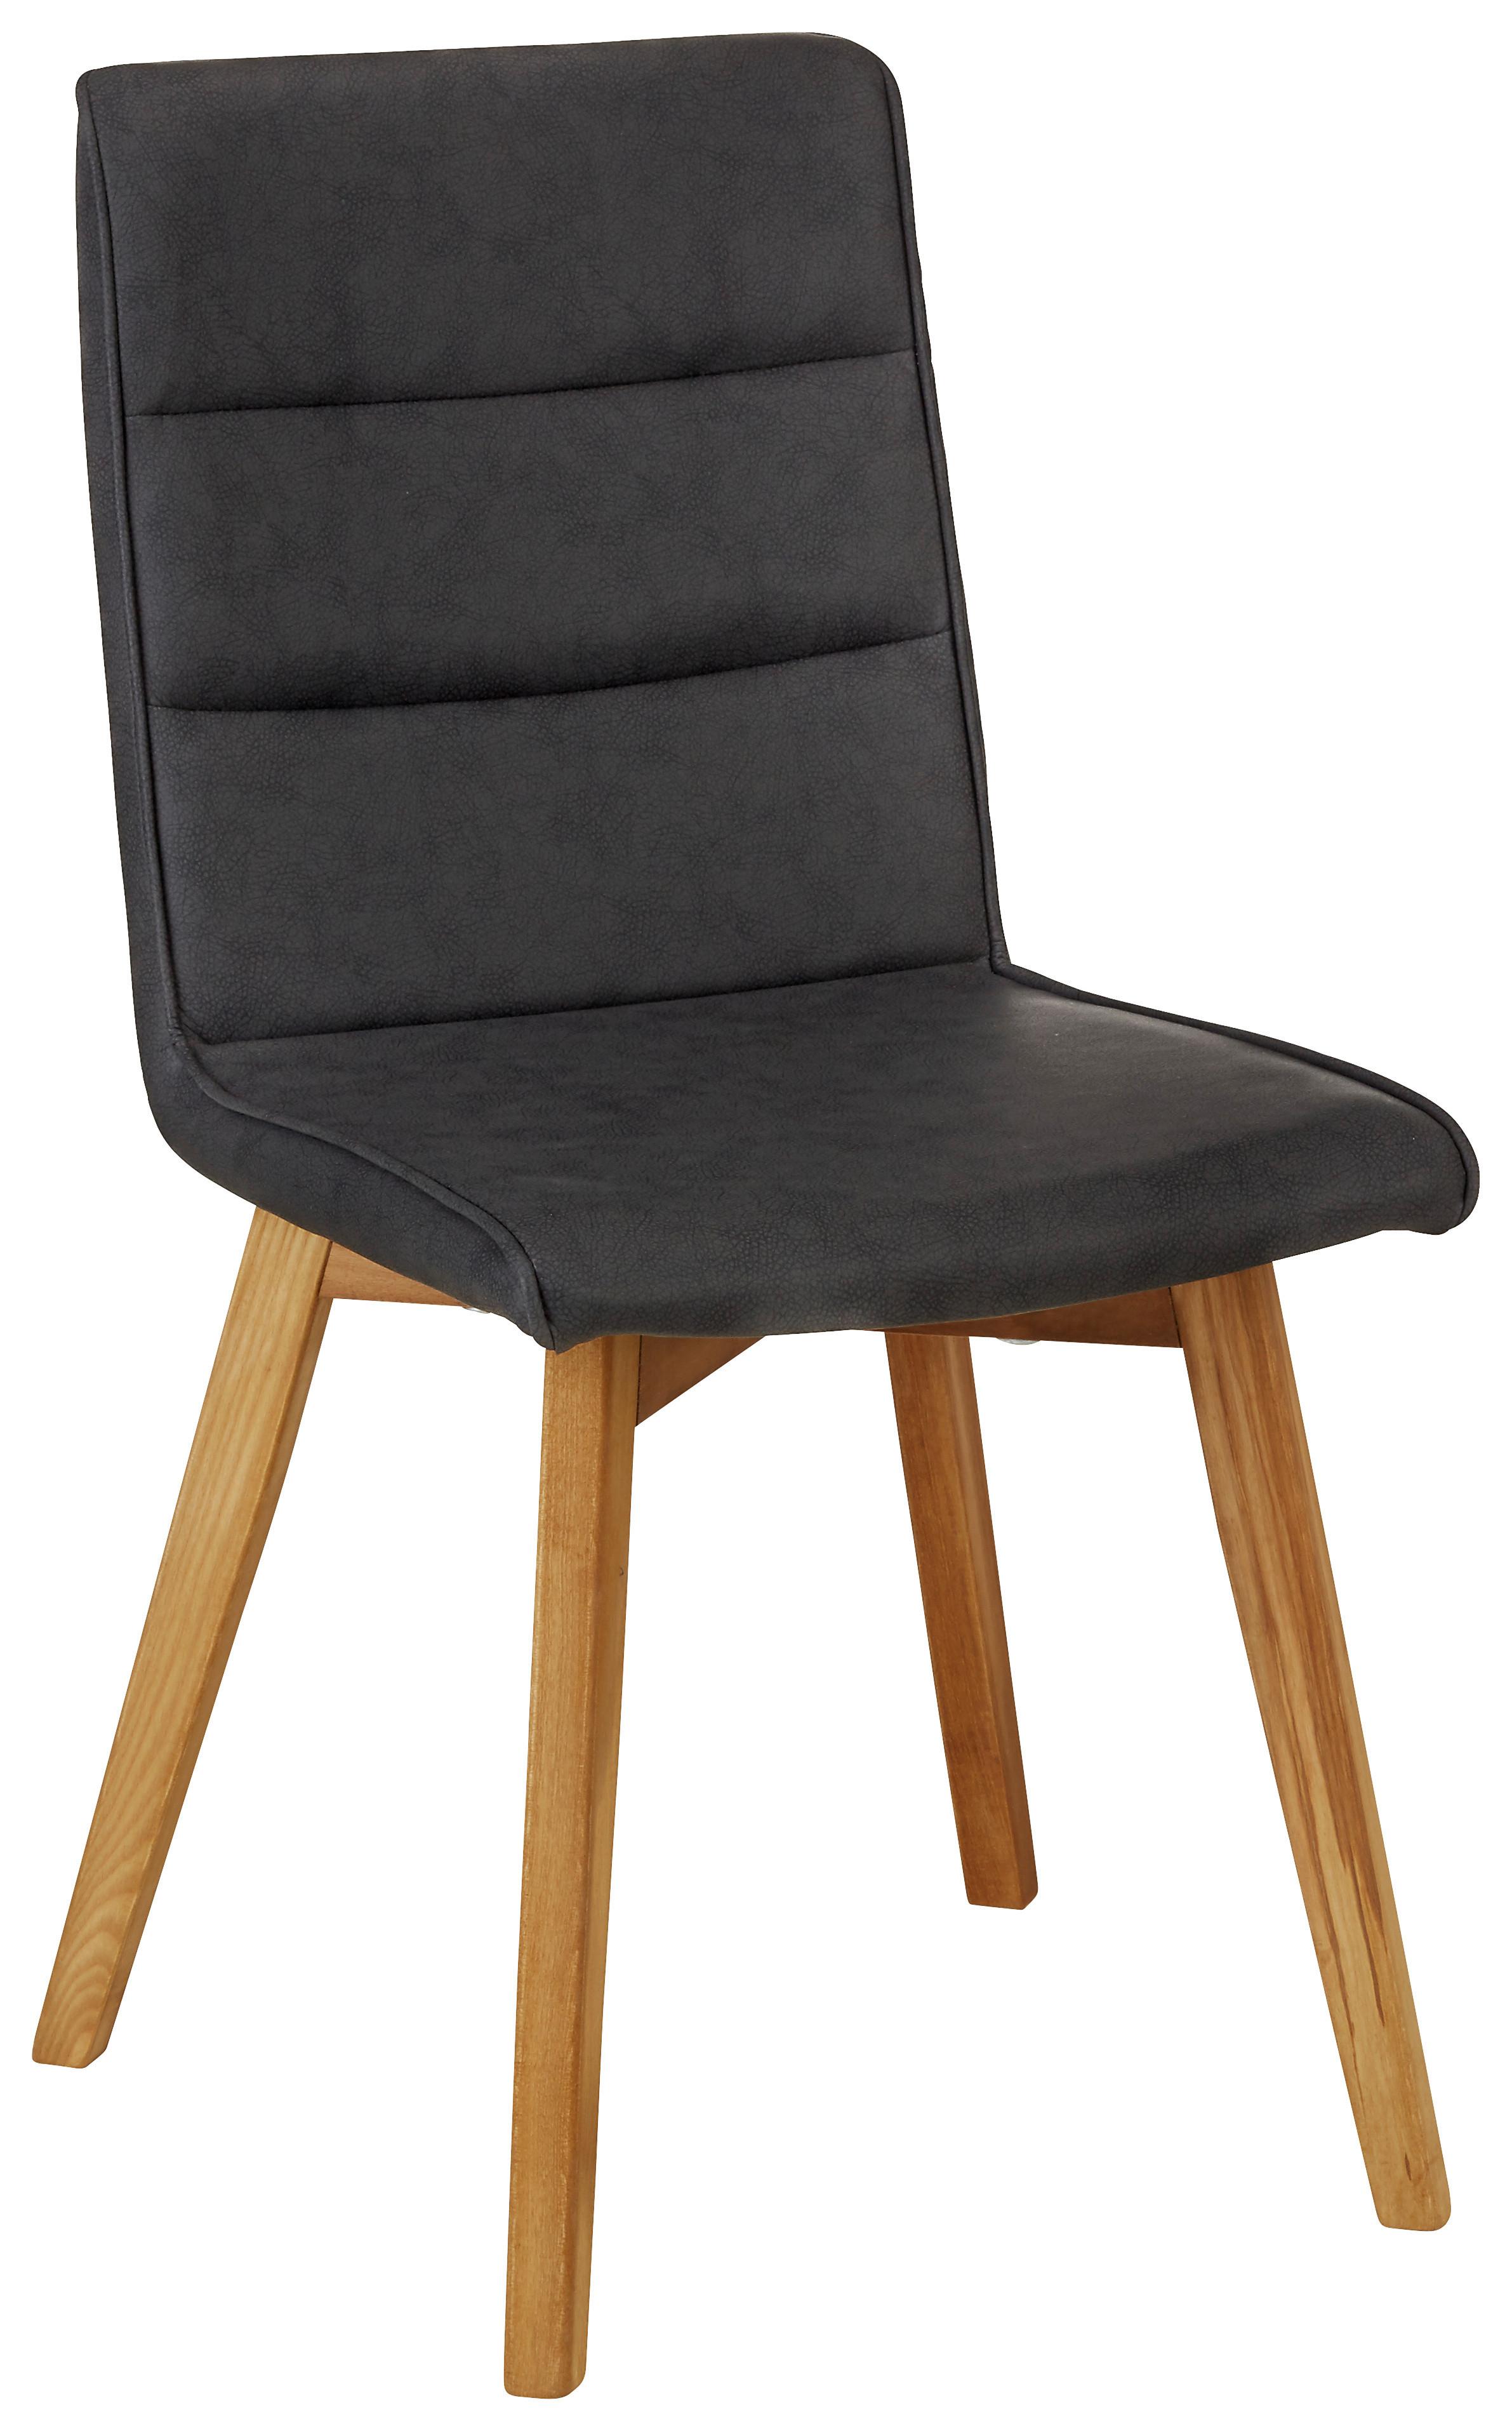 Židle Ellie -Top- - černá/barvy dubu, Moderní, dřevo/textil (44/87/55,5cm) - Zandiara